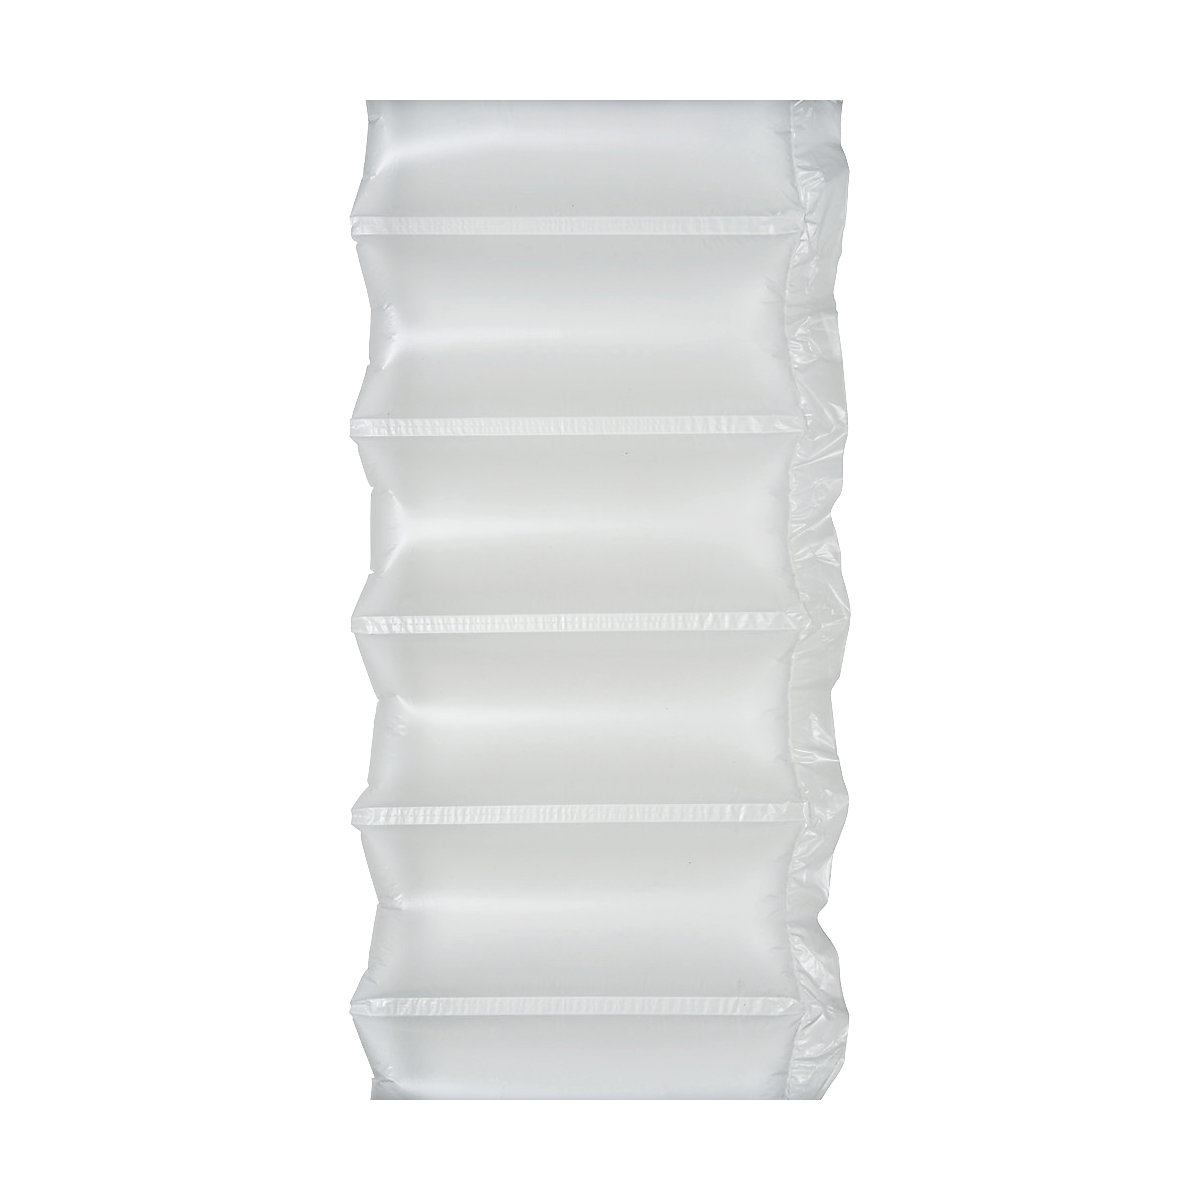 Luftkissenfolie AirWave®, transparent, Länge 600 m, BxH 300 x 130 mm